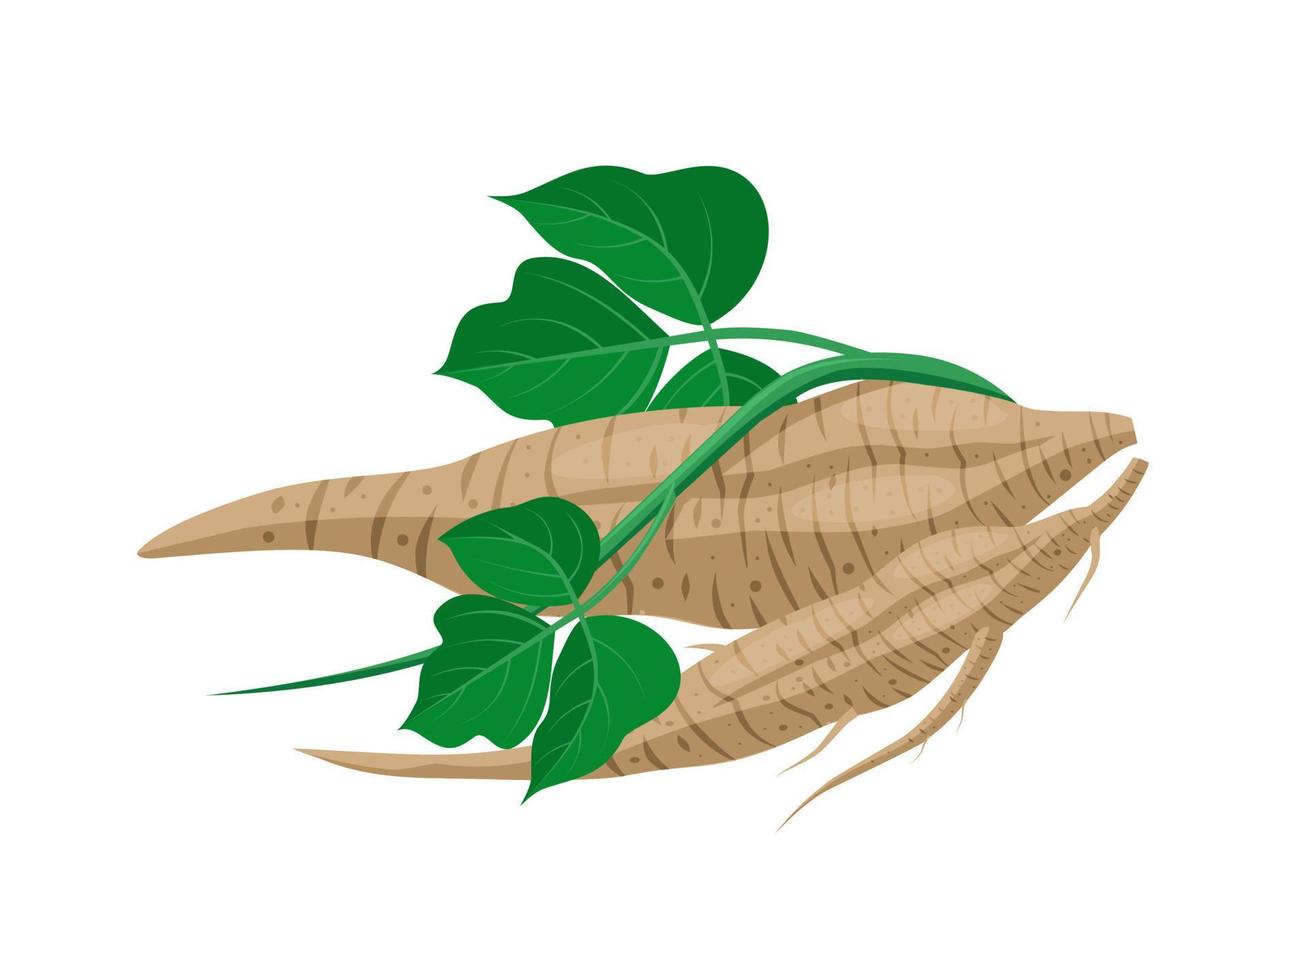 ilustração em vetor de raiz de kudzu ou pueraria montana, planta de ervas, isolada em um fundo branco.